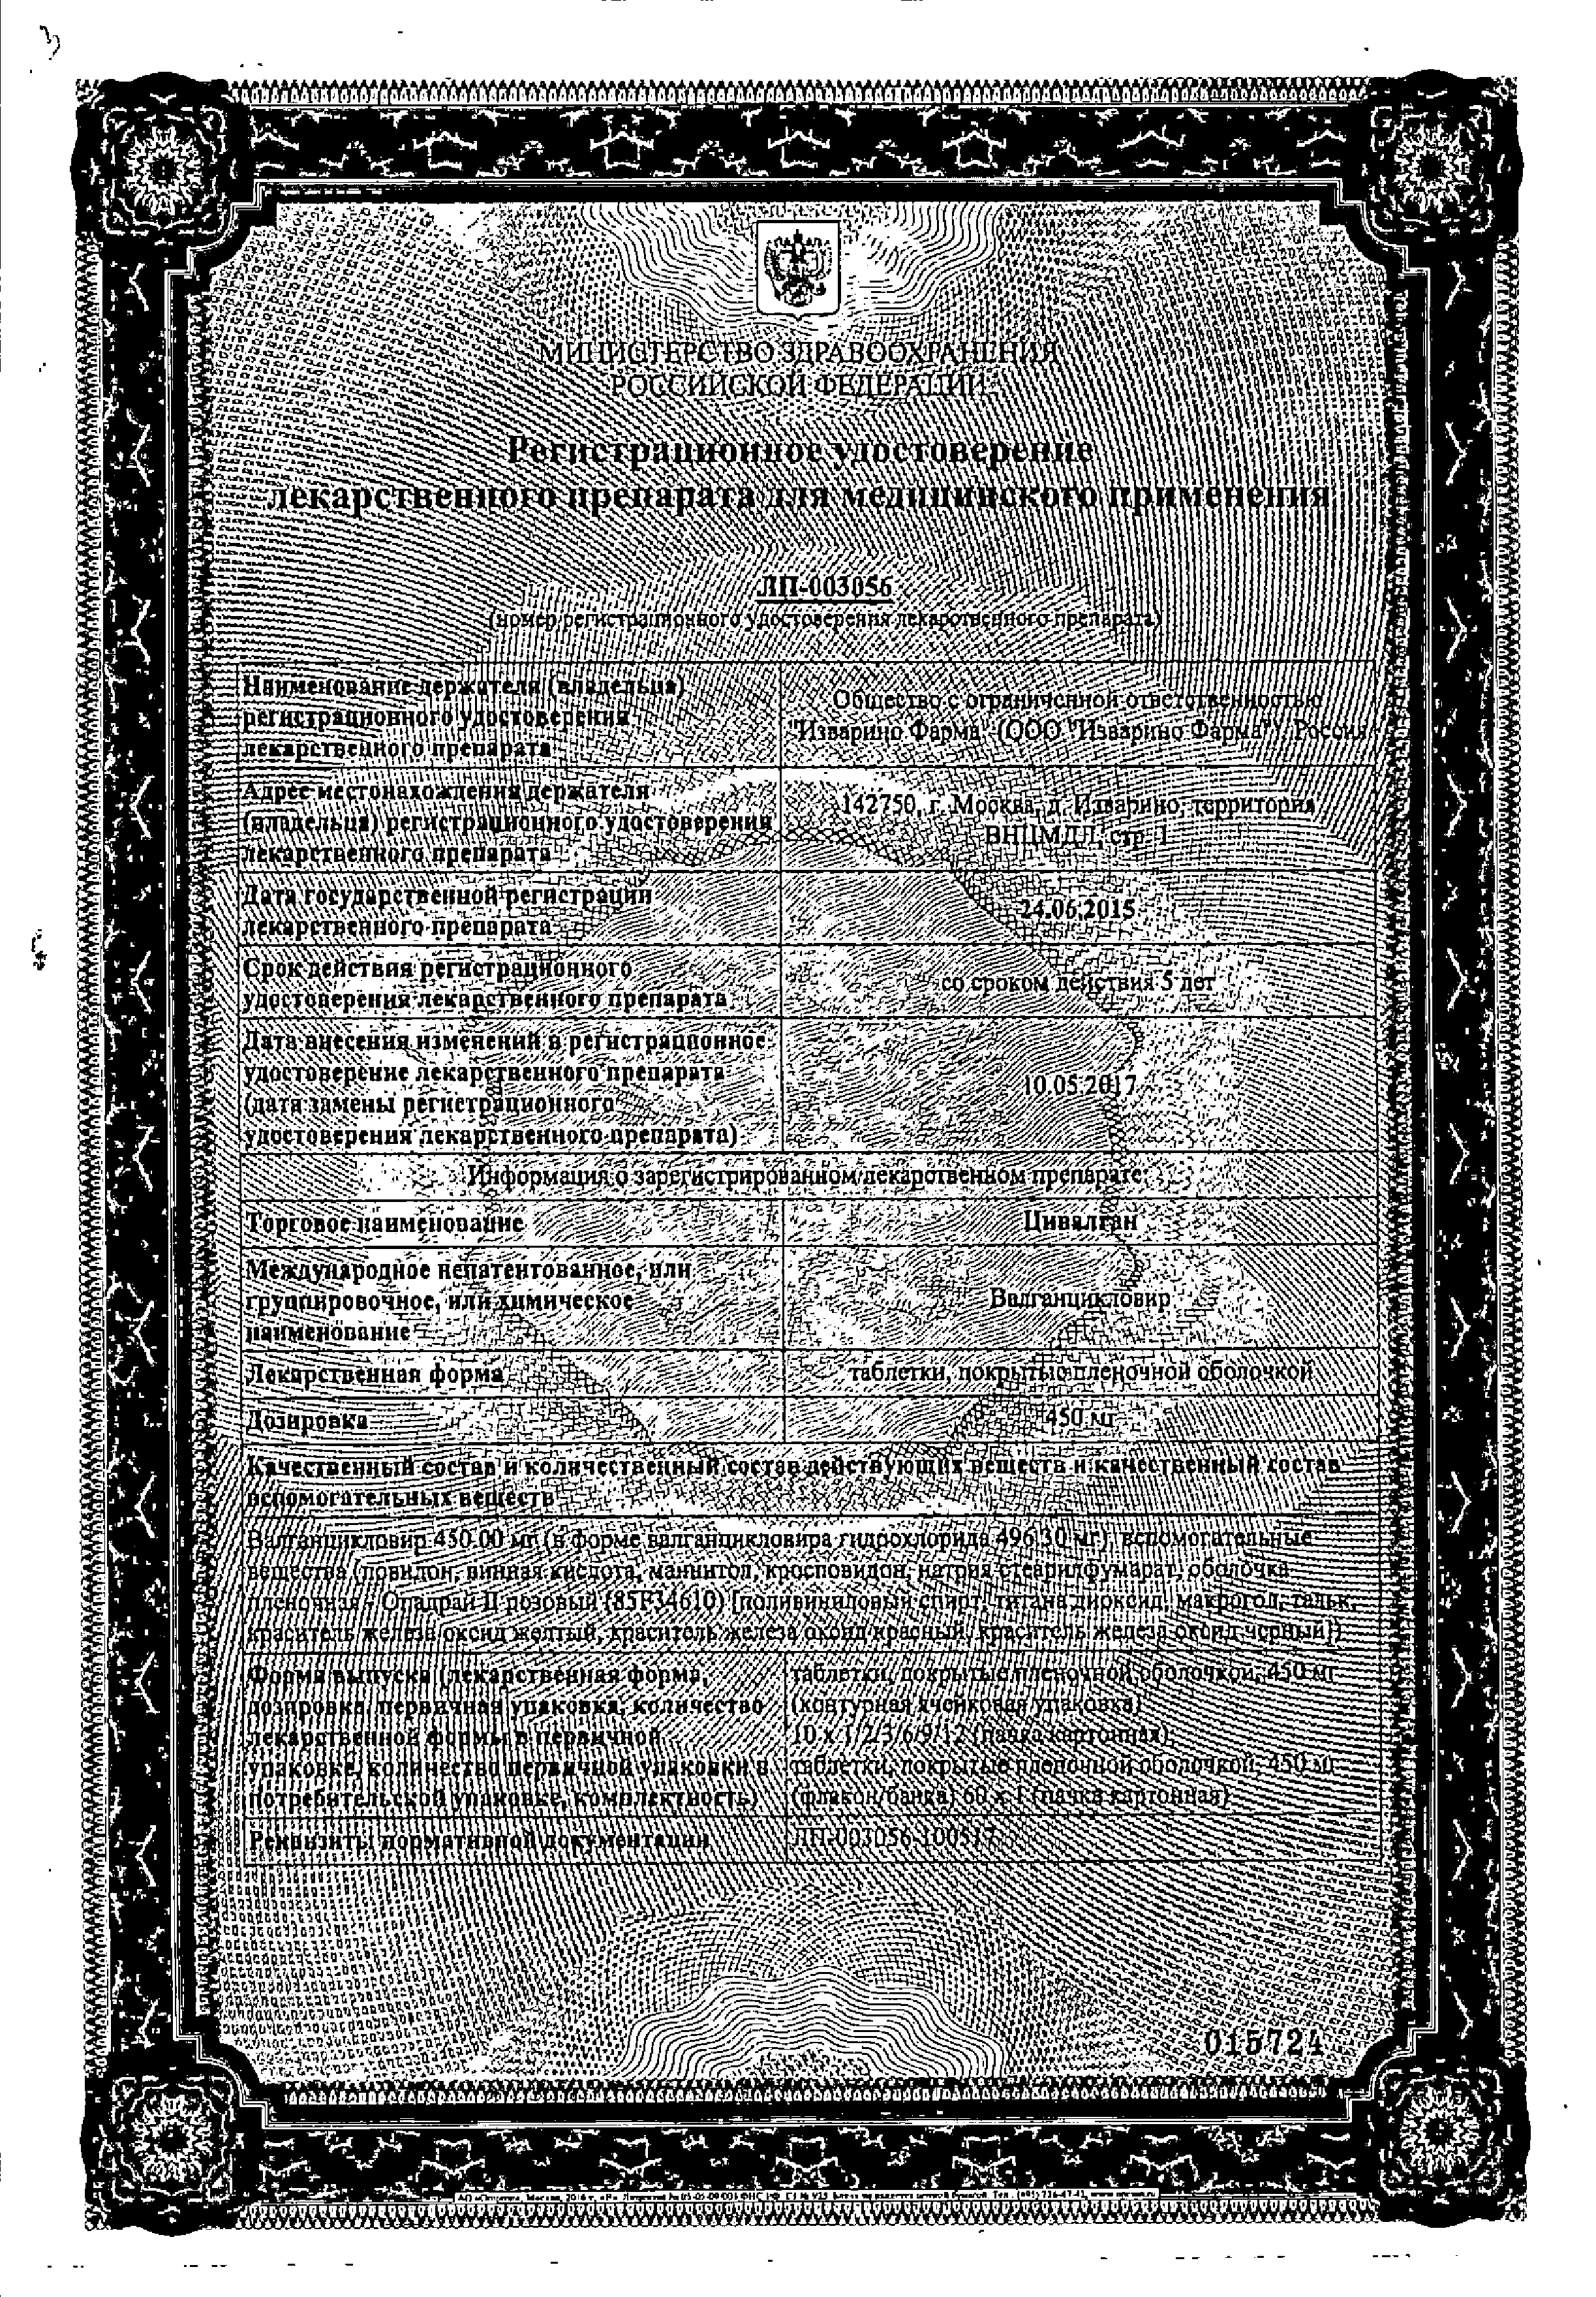 Цивалган сертификат